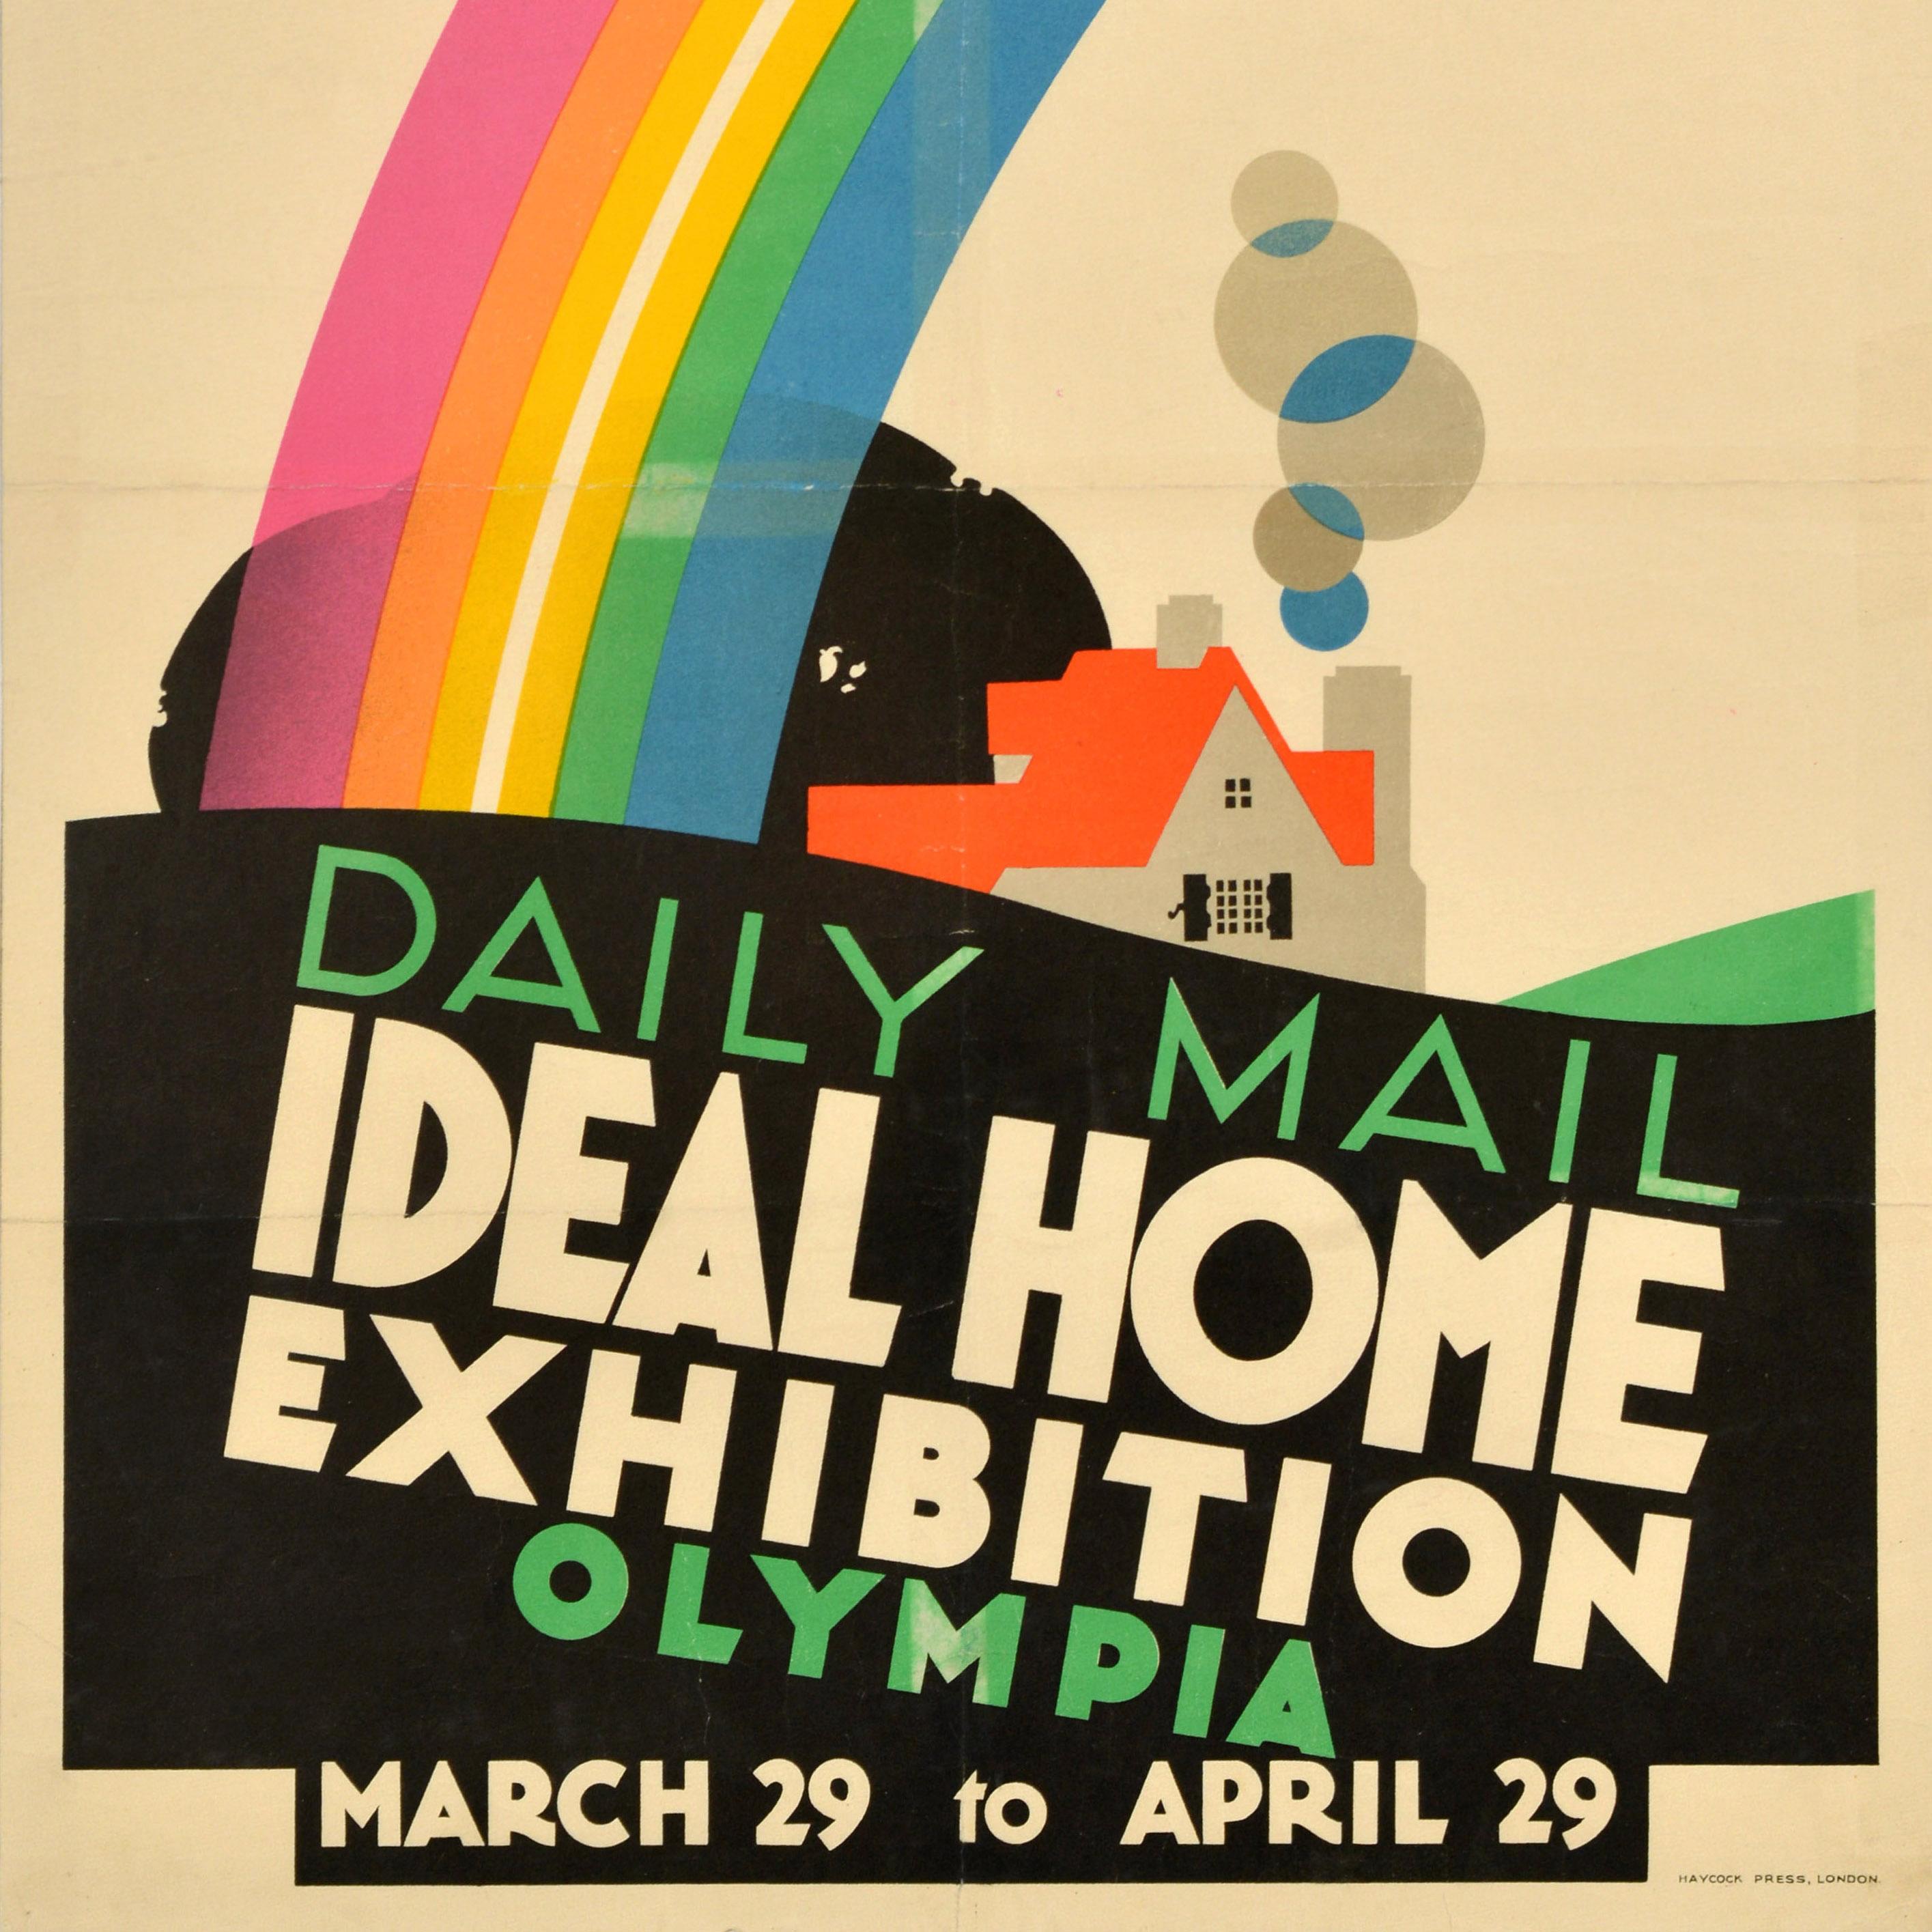 Original Vintage-Werbeplakat für die Daily Mail Ideal Home Exhibition Olympia, die vom 19. März bis zum 29. April stattfand - We Are Exhibiting - mit einer farbenfrohen Illustration des bekannten britischen Plakatkünstlers Frank Newbould